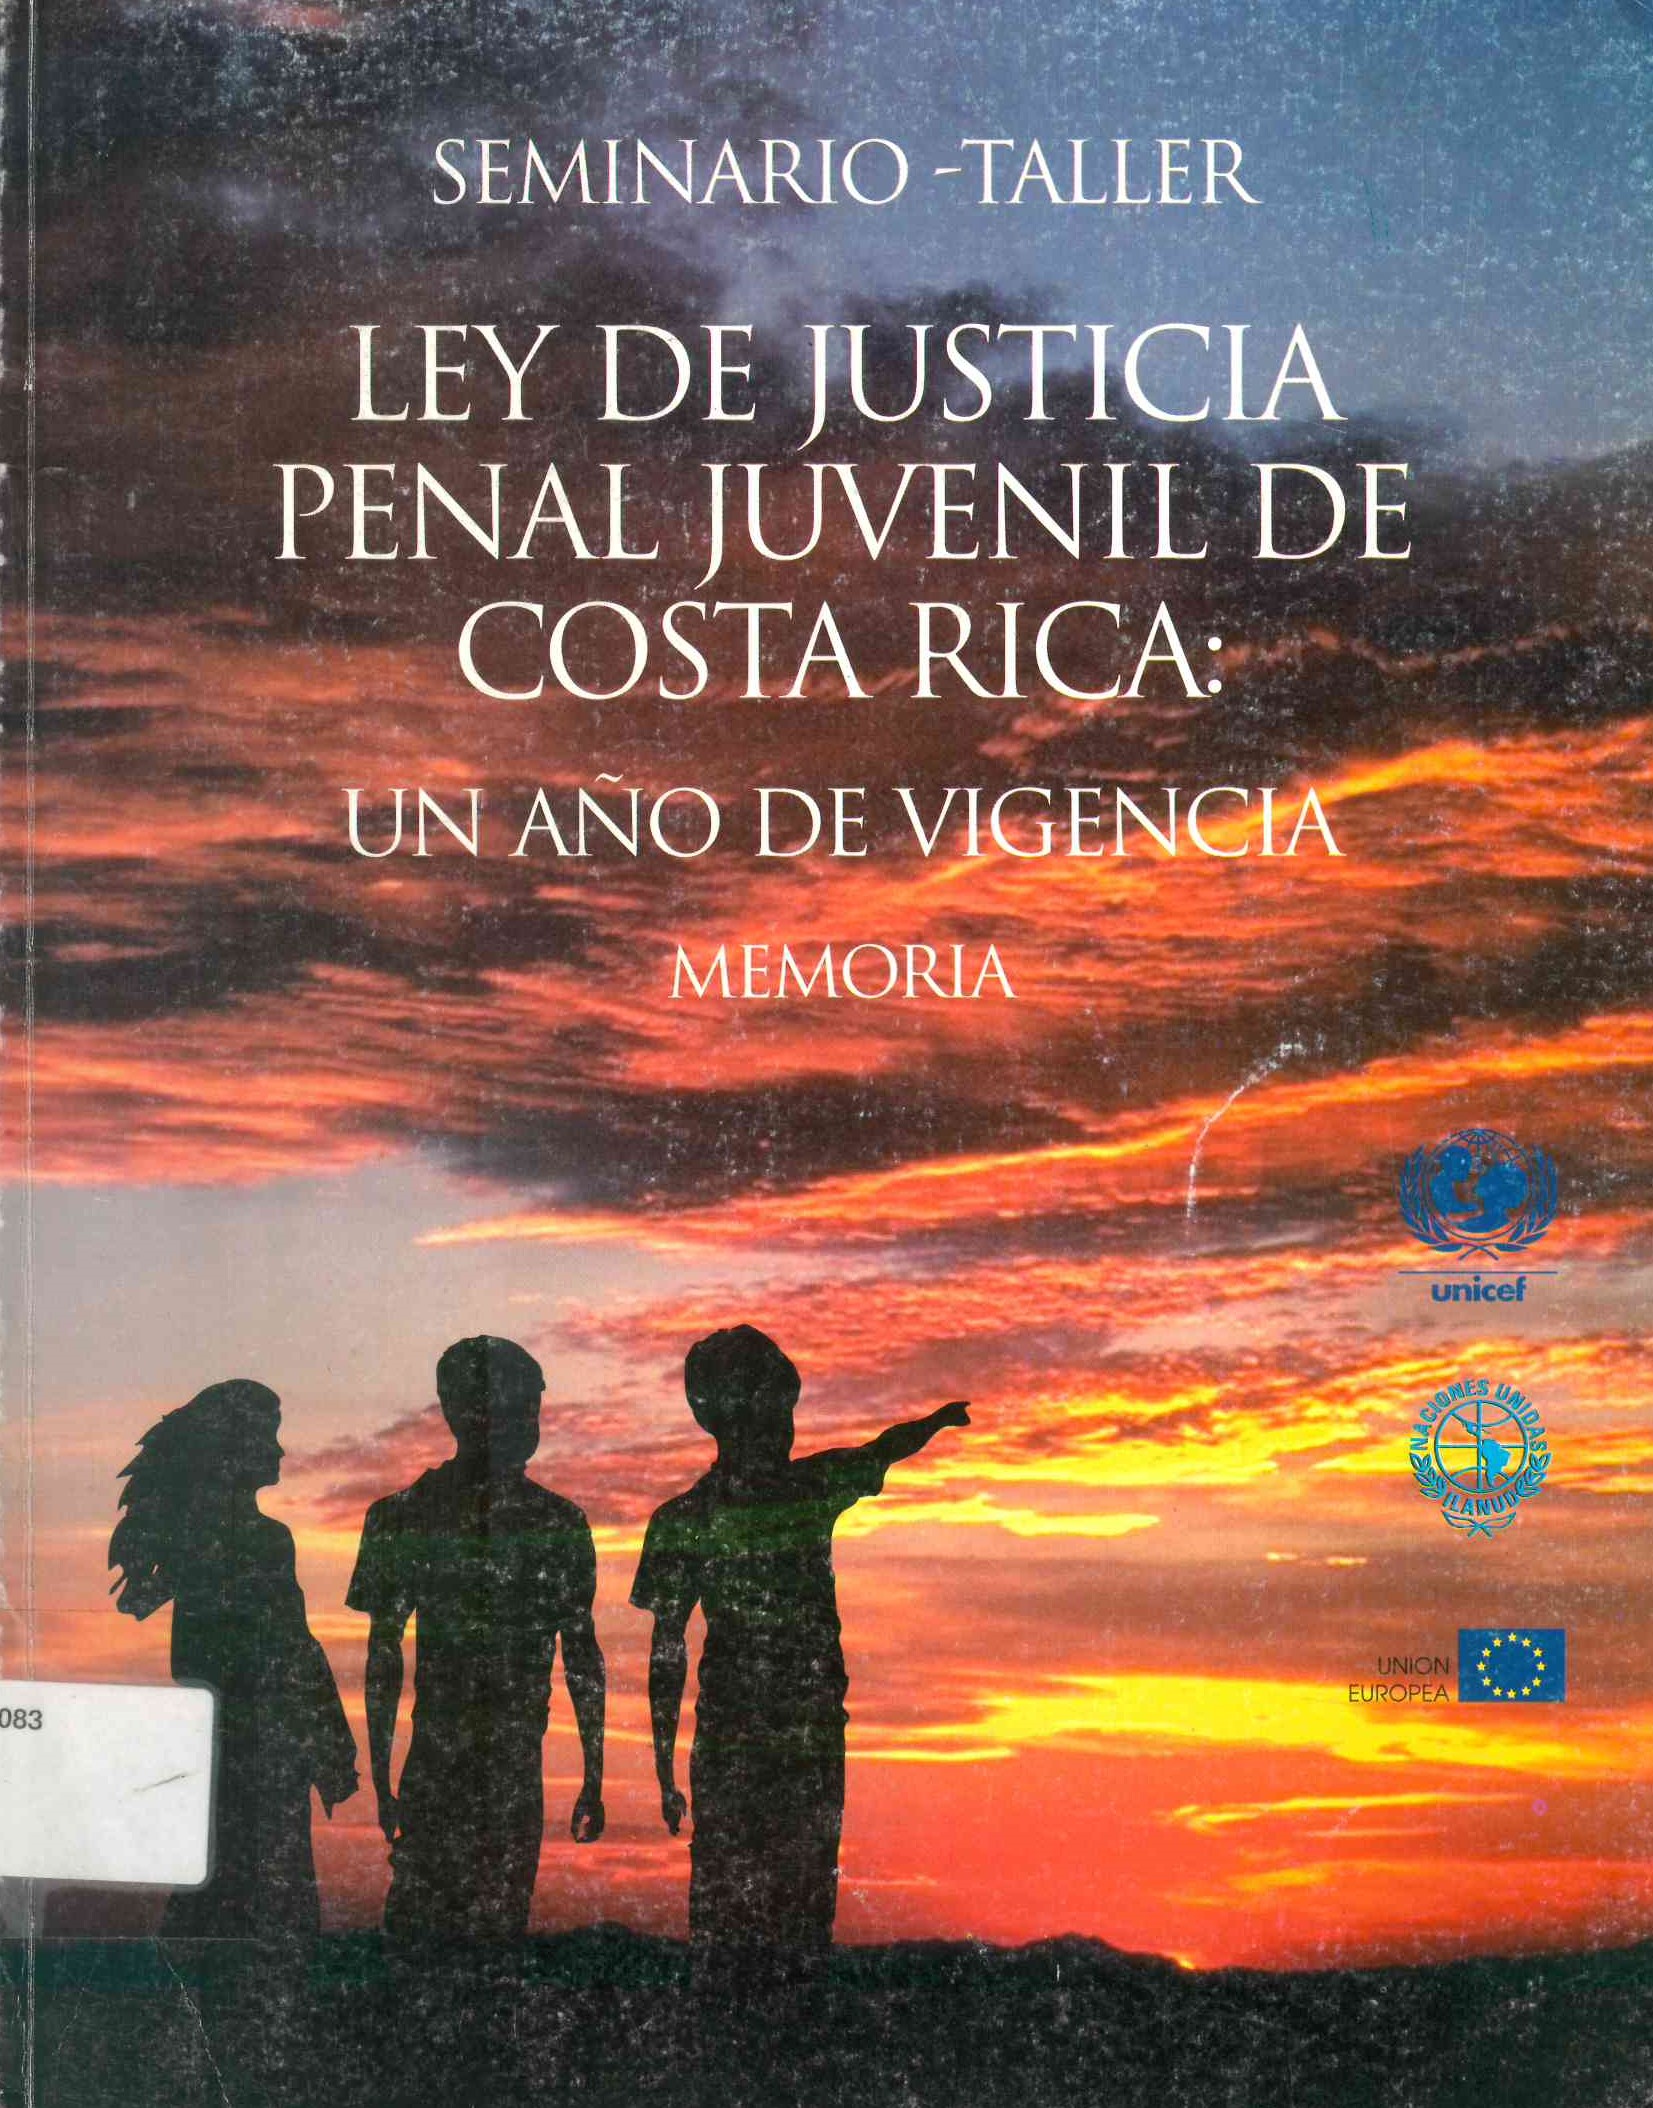 Seminario-taller. Ley de justicia penal juvenil de Costa Rica: Un año de vigencia memoria.